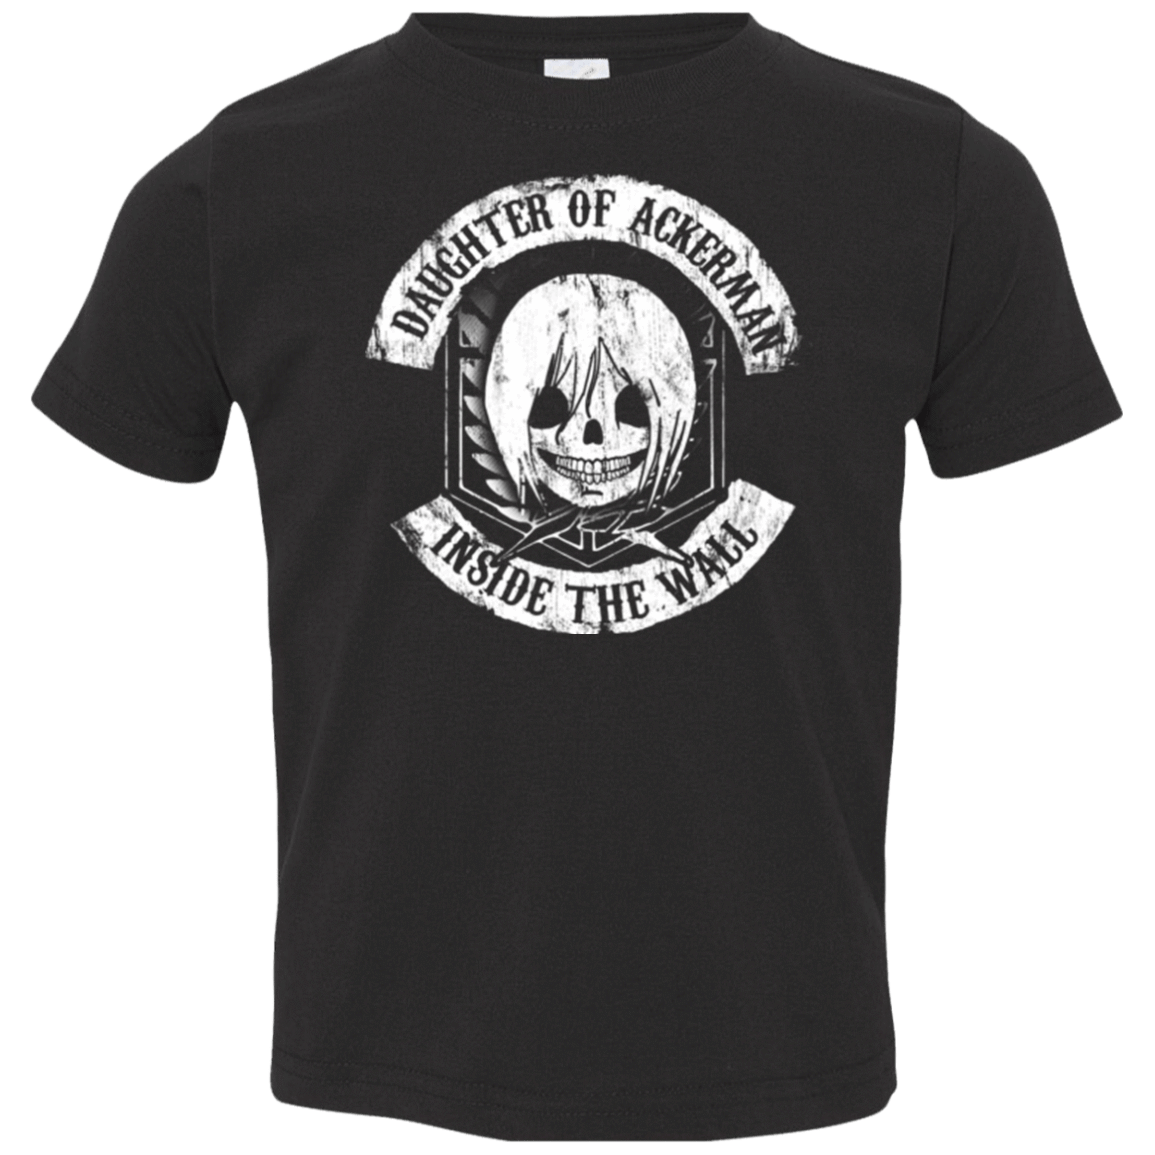 T-Shirts Black / 2T Daughter of Ackerman Toddler Premium T-Shirt